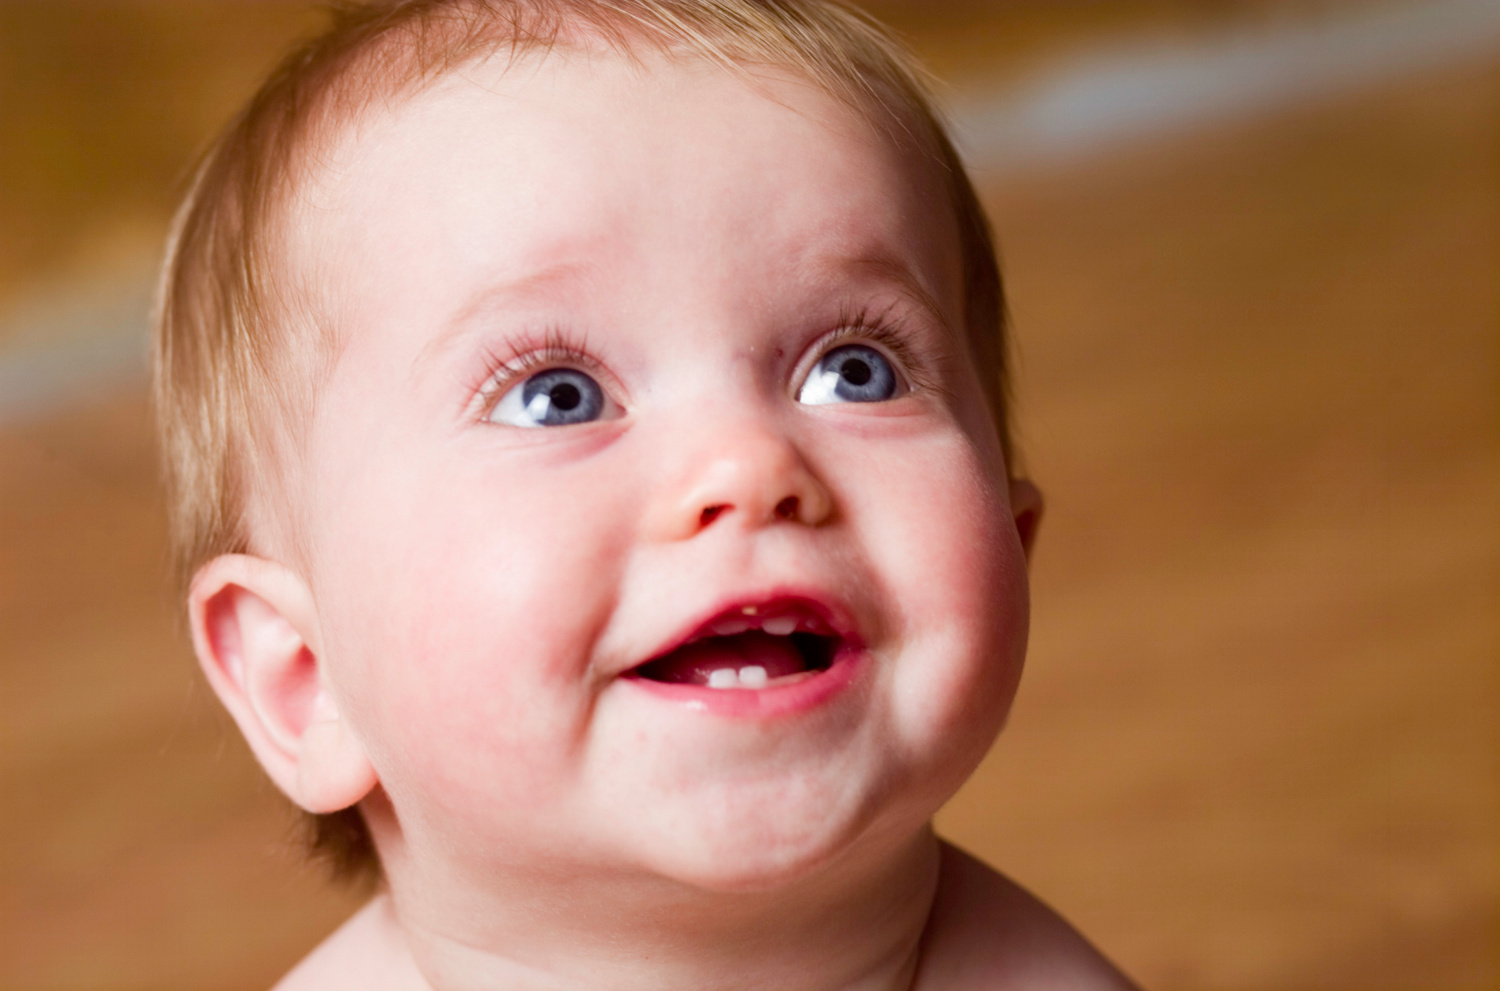 La dentición en el recién nacido. Todo lo que hay que saber